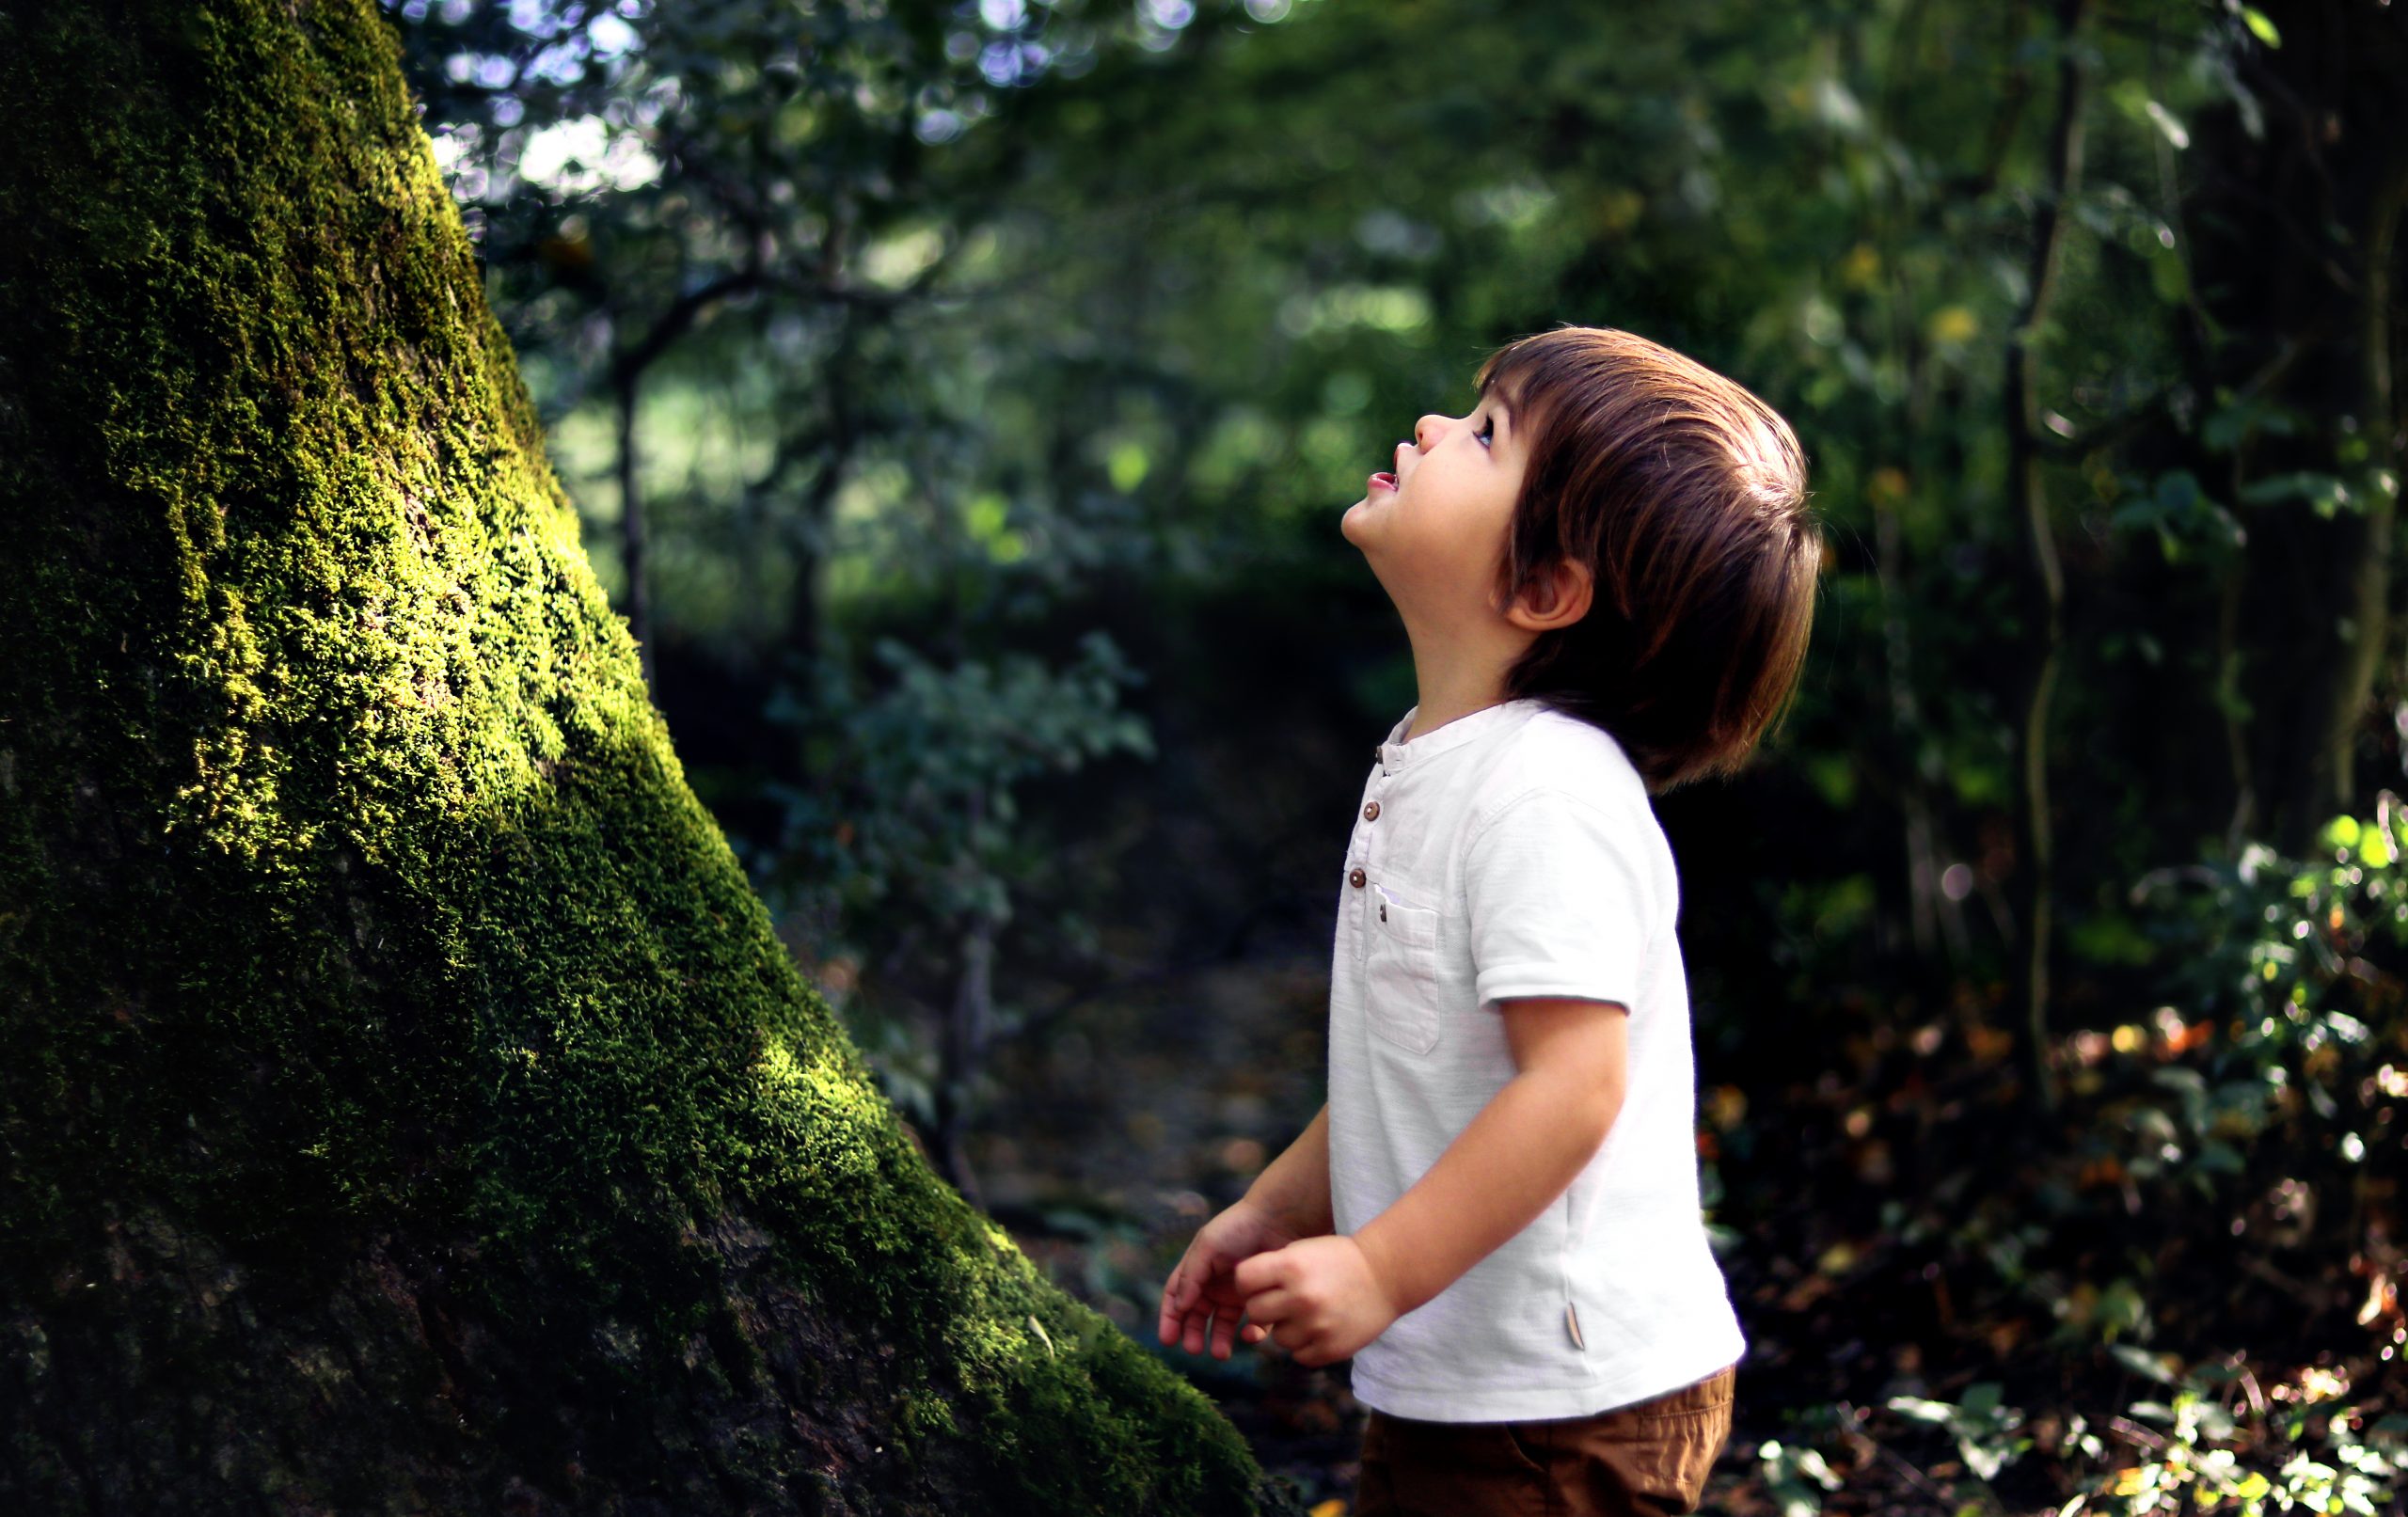 Criança olhando para o alto, em frente a um grande tronco e cercada por vegetação.